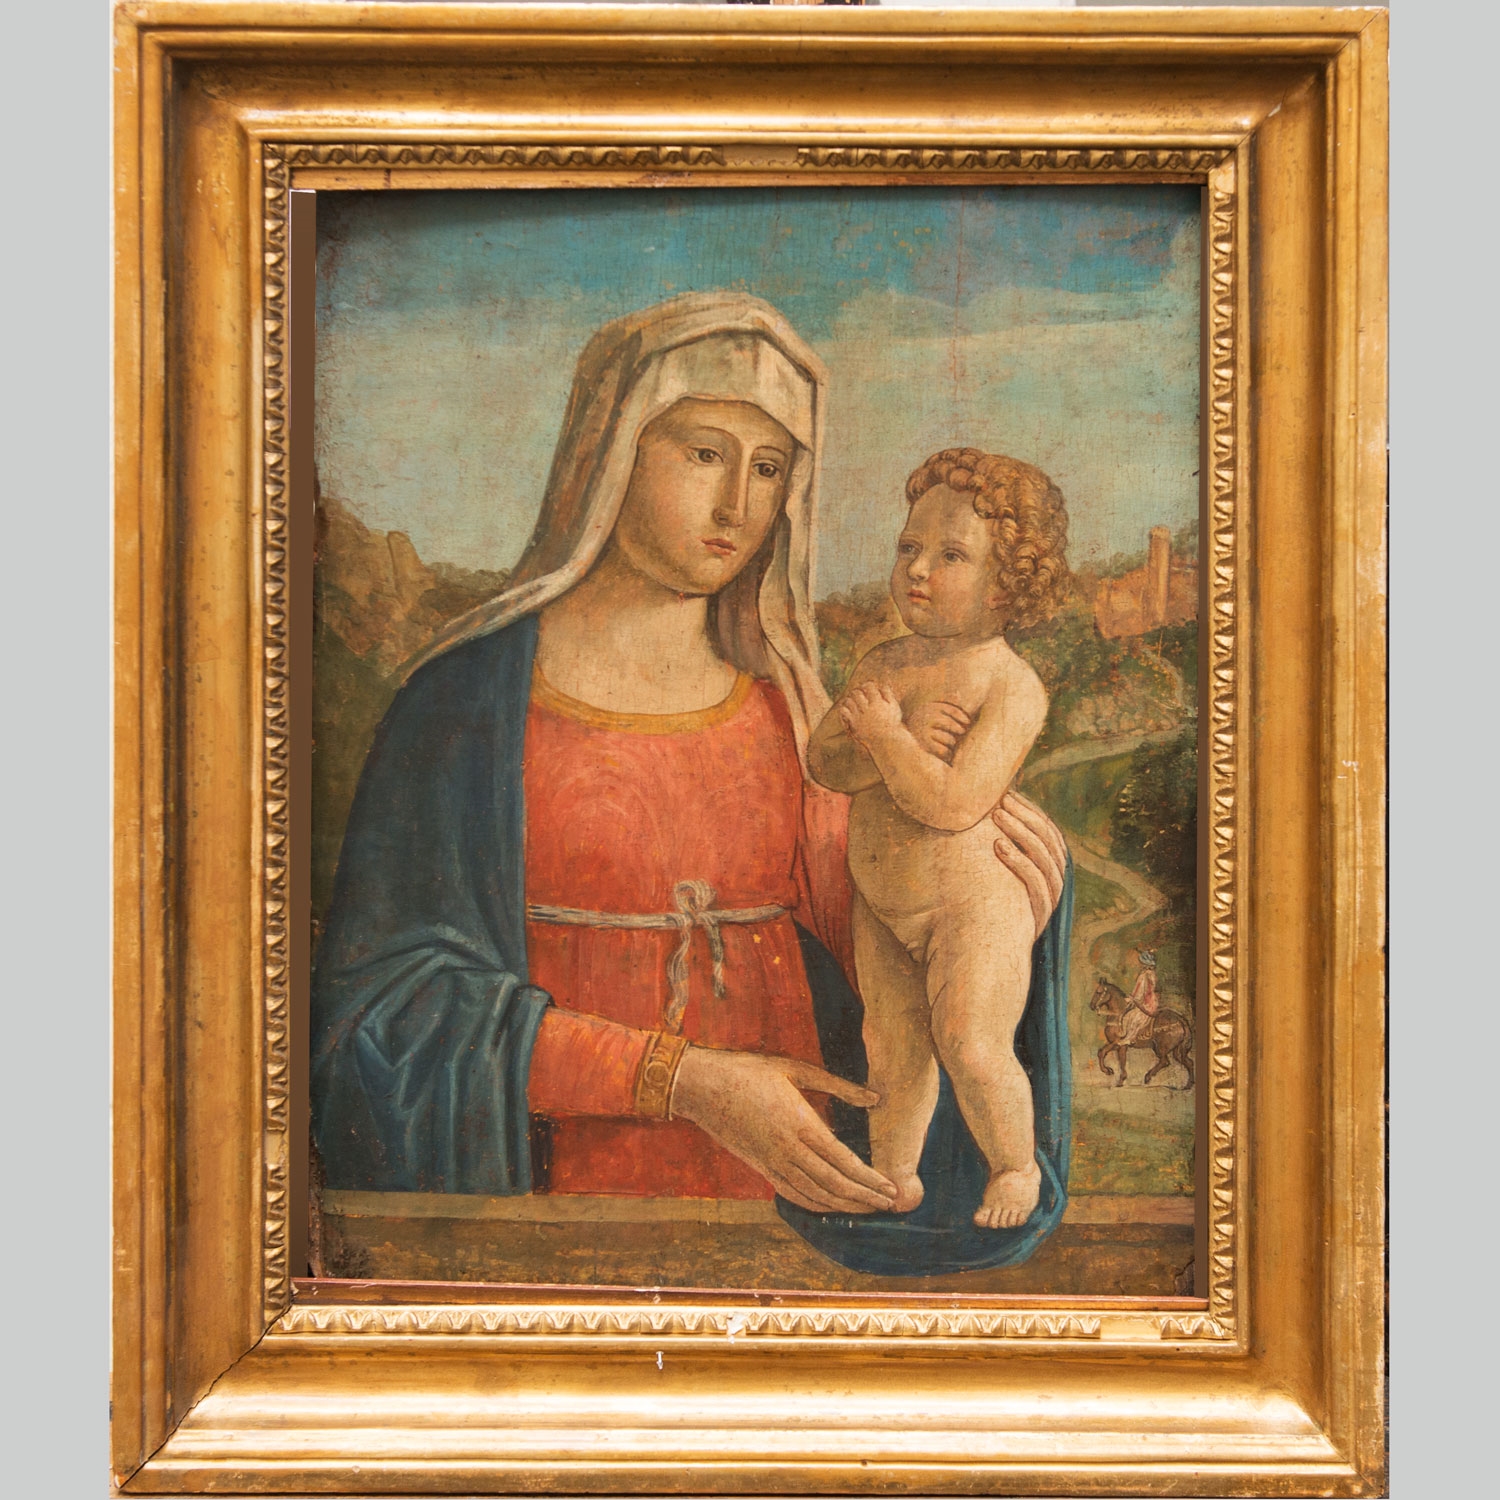 Maria with Child in landscape - Cima da Conegliano